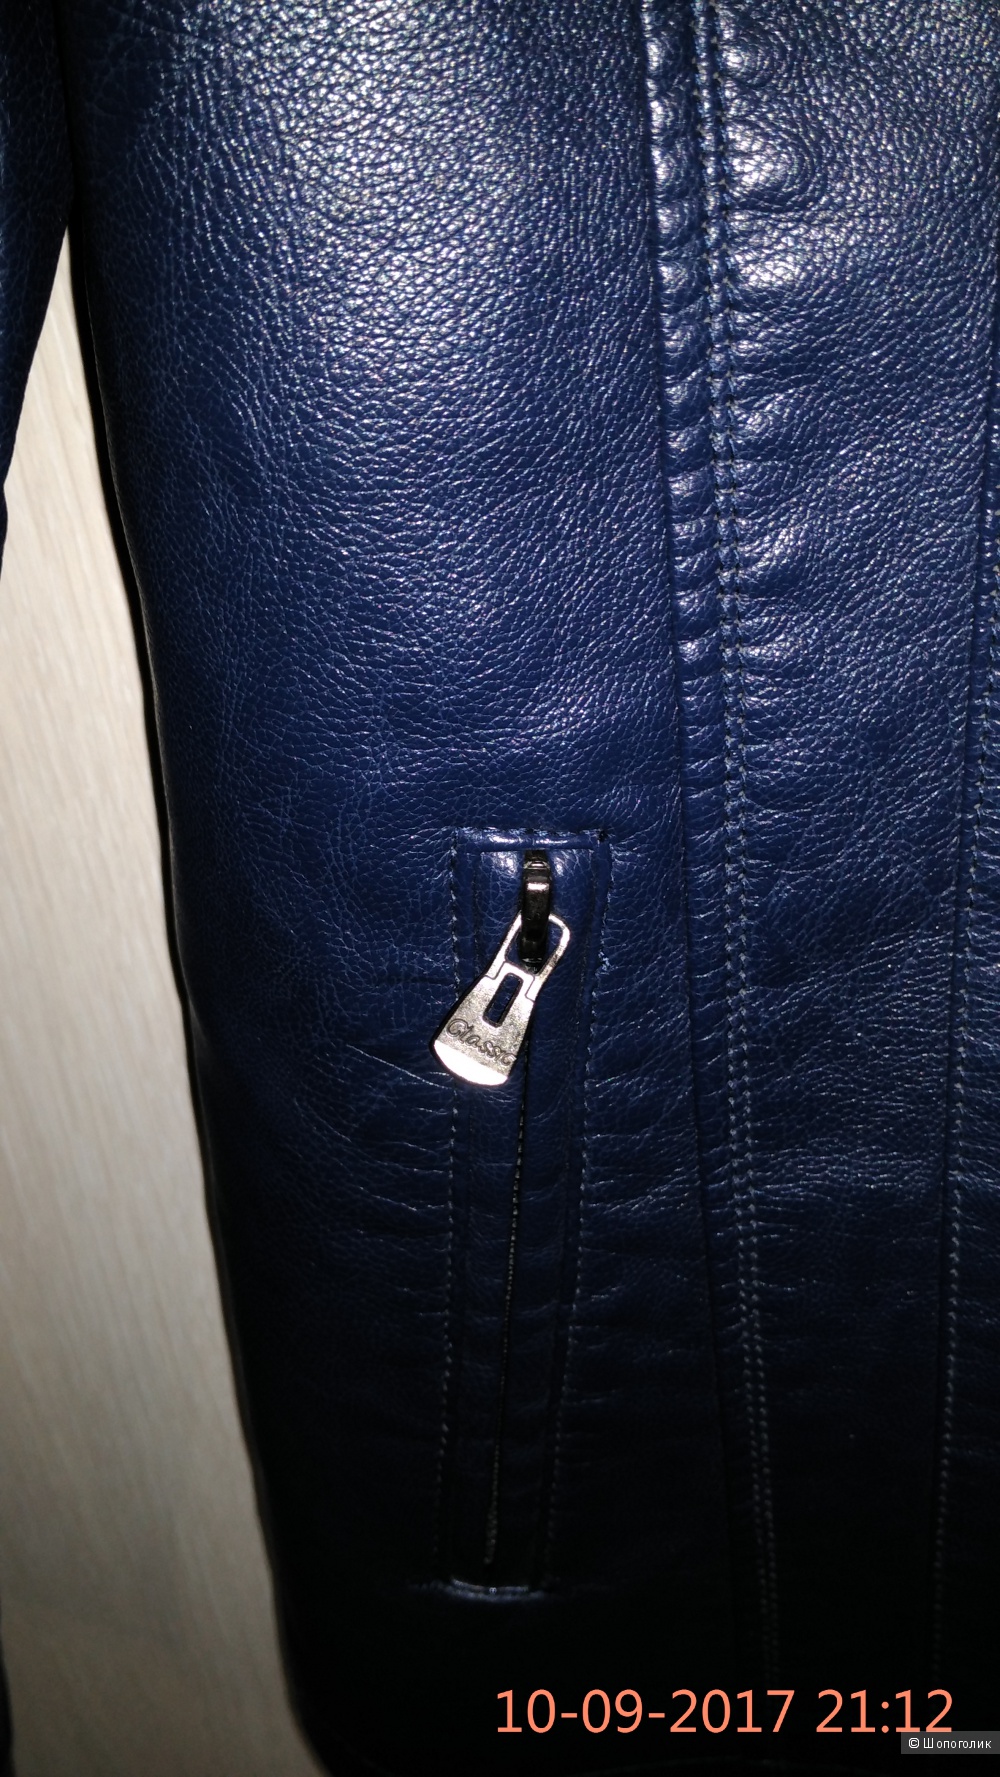 Куртка мужская из кожзаменителя, размер 46 -48, Турция